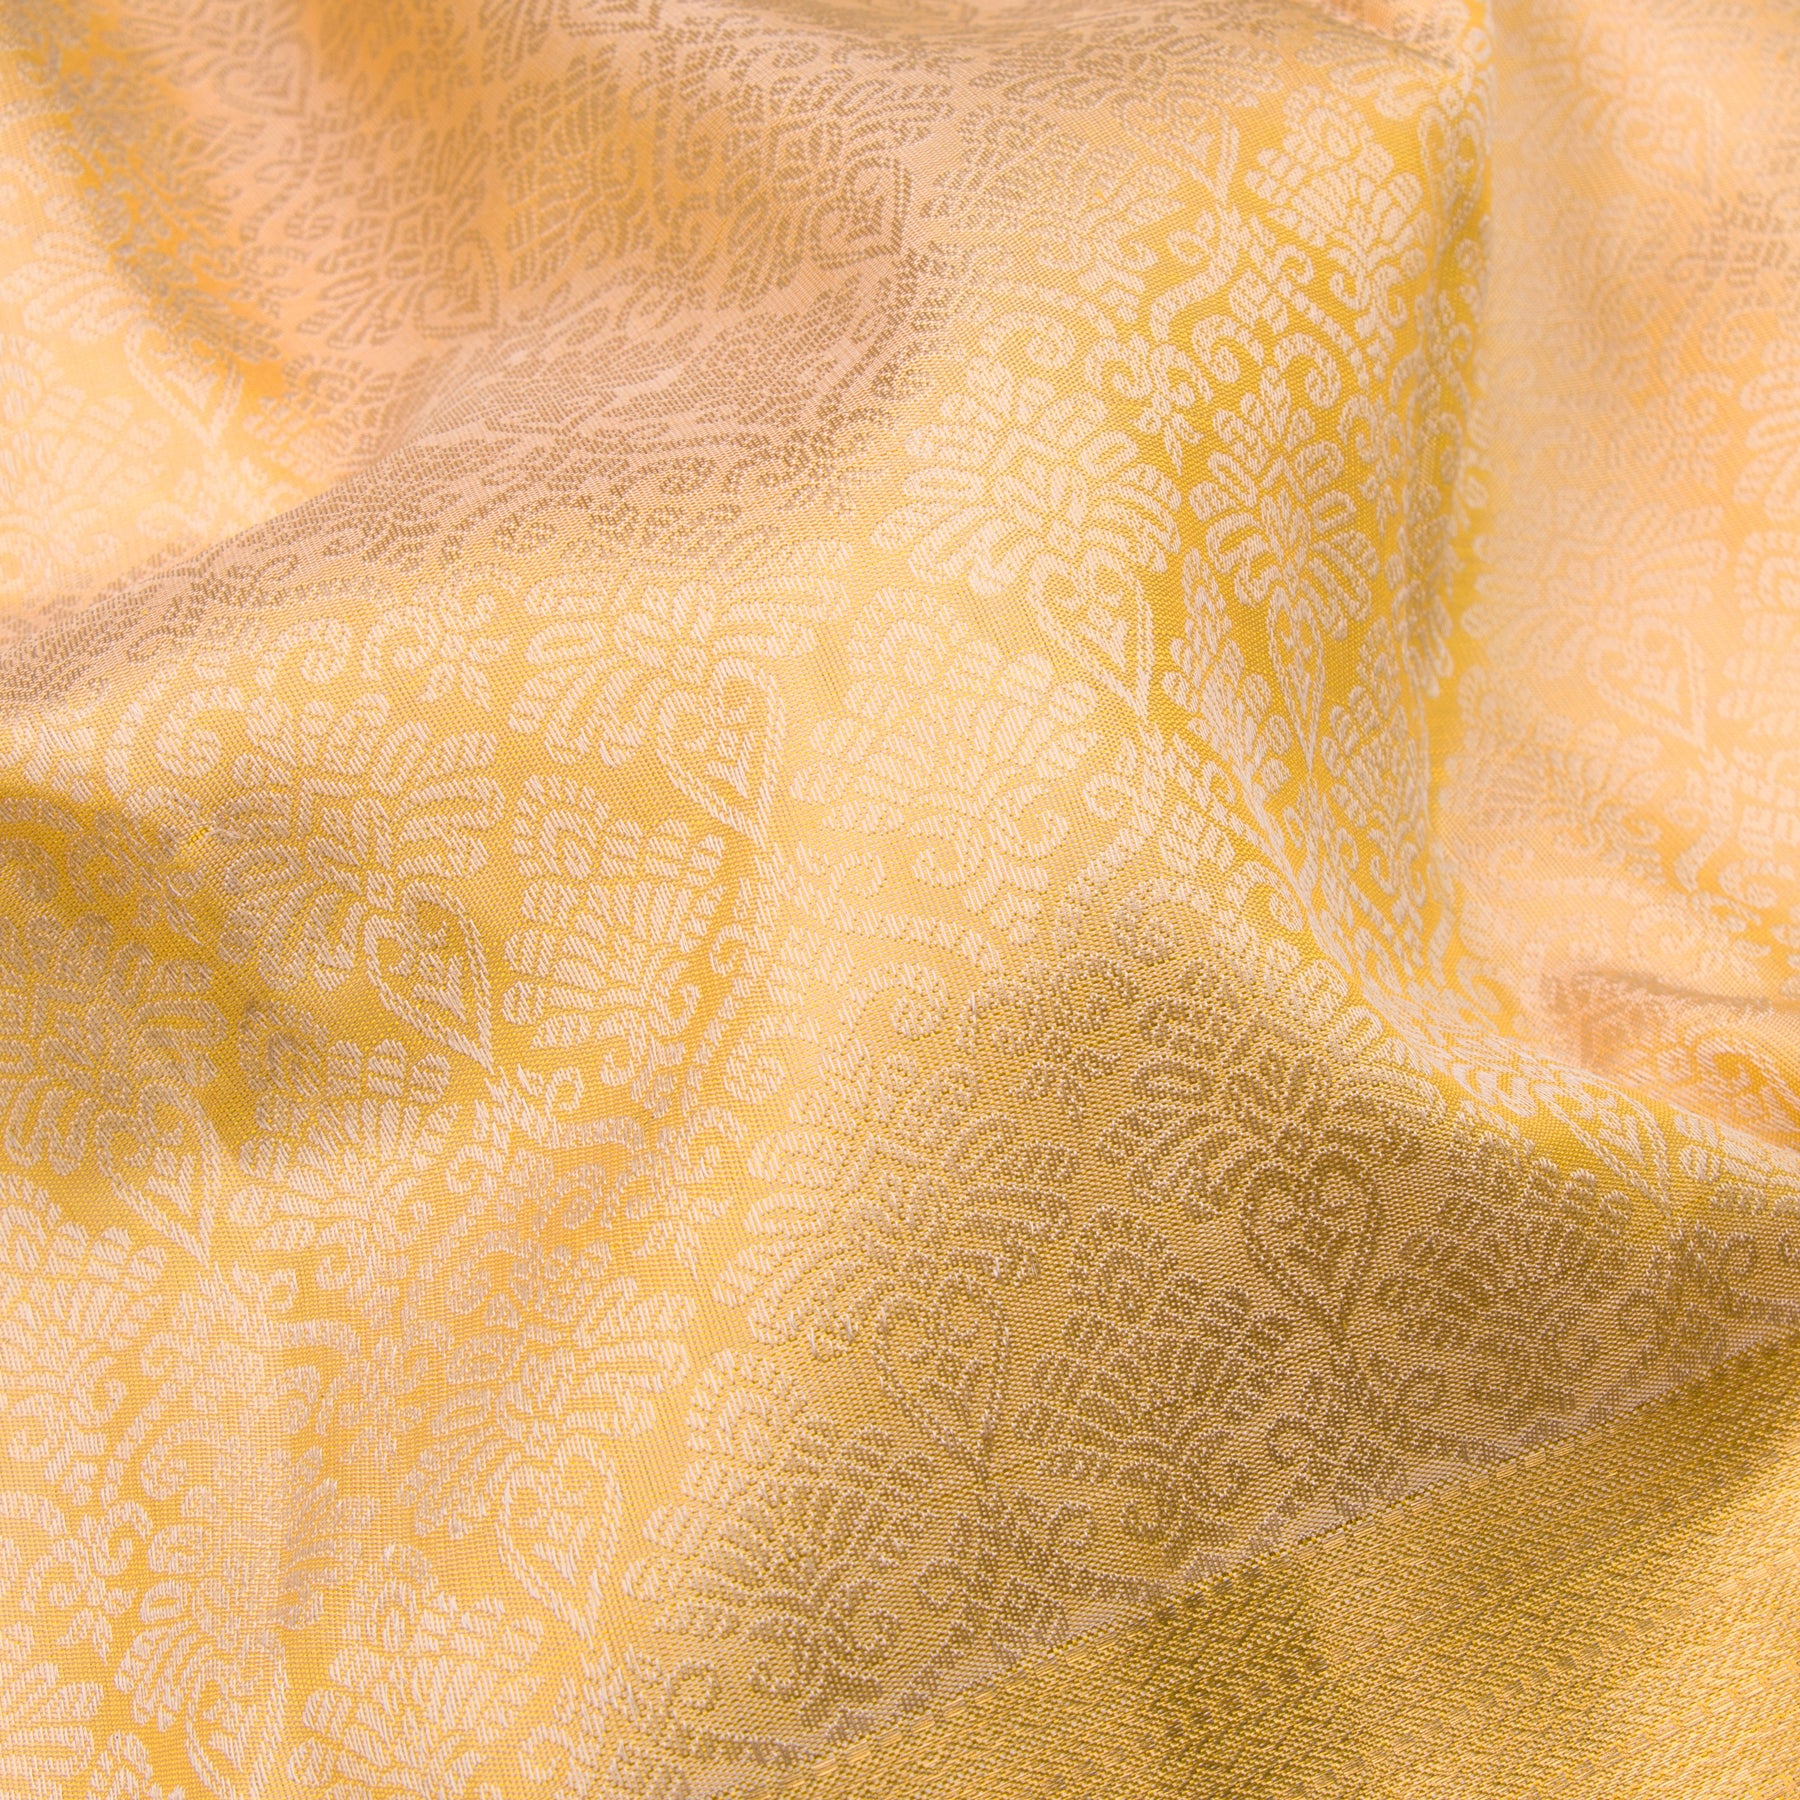 Kanakavalli Kanjivaram Silk Sari 23-599-HS001-04044 - Fabric View